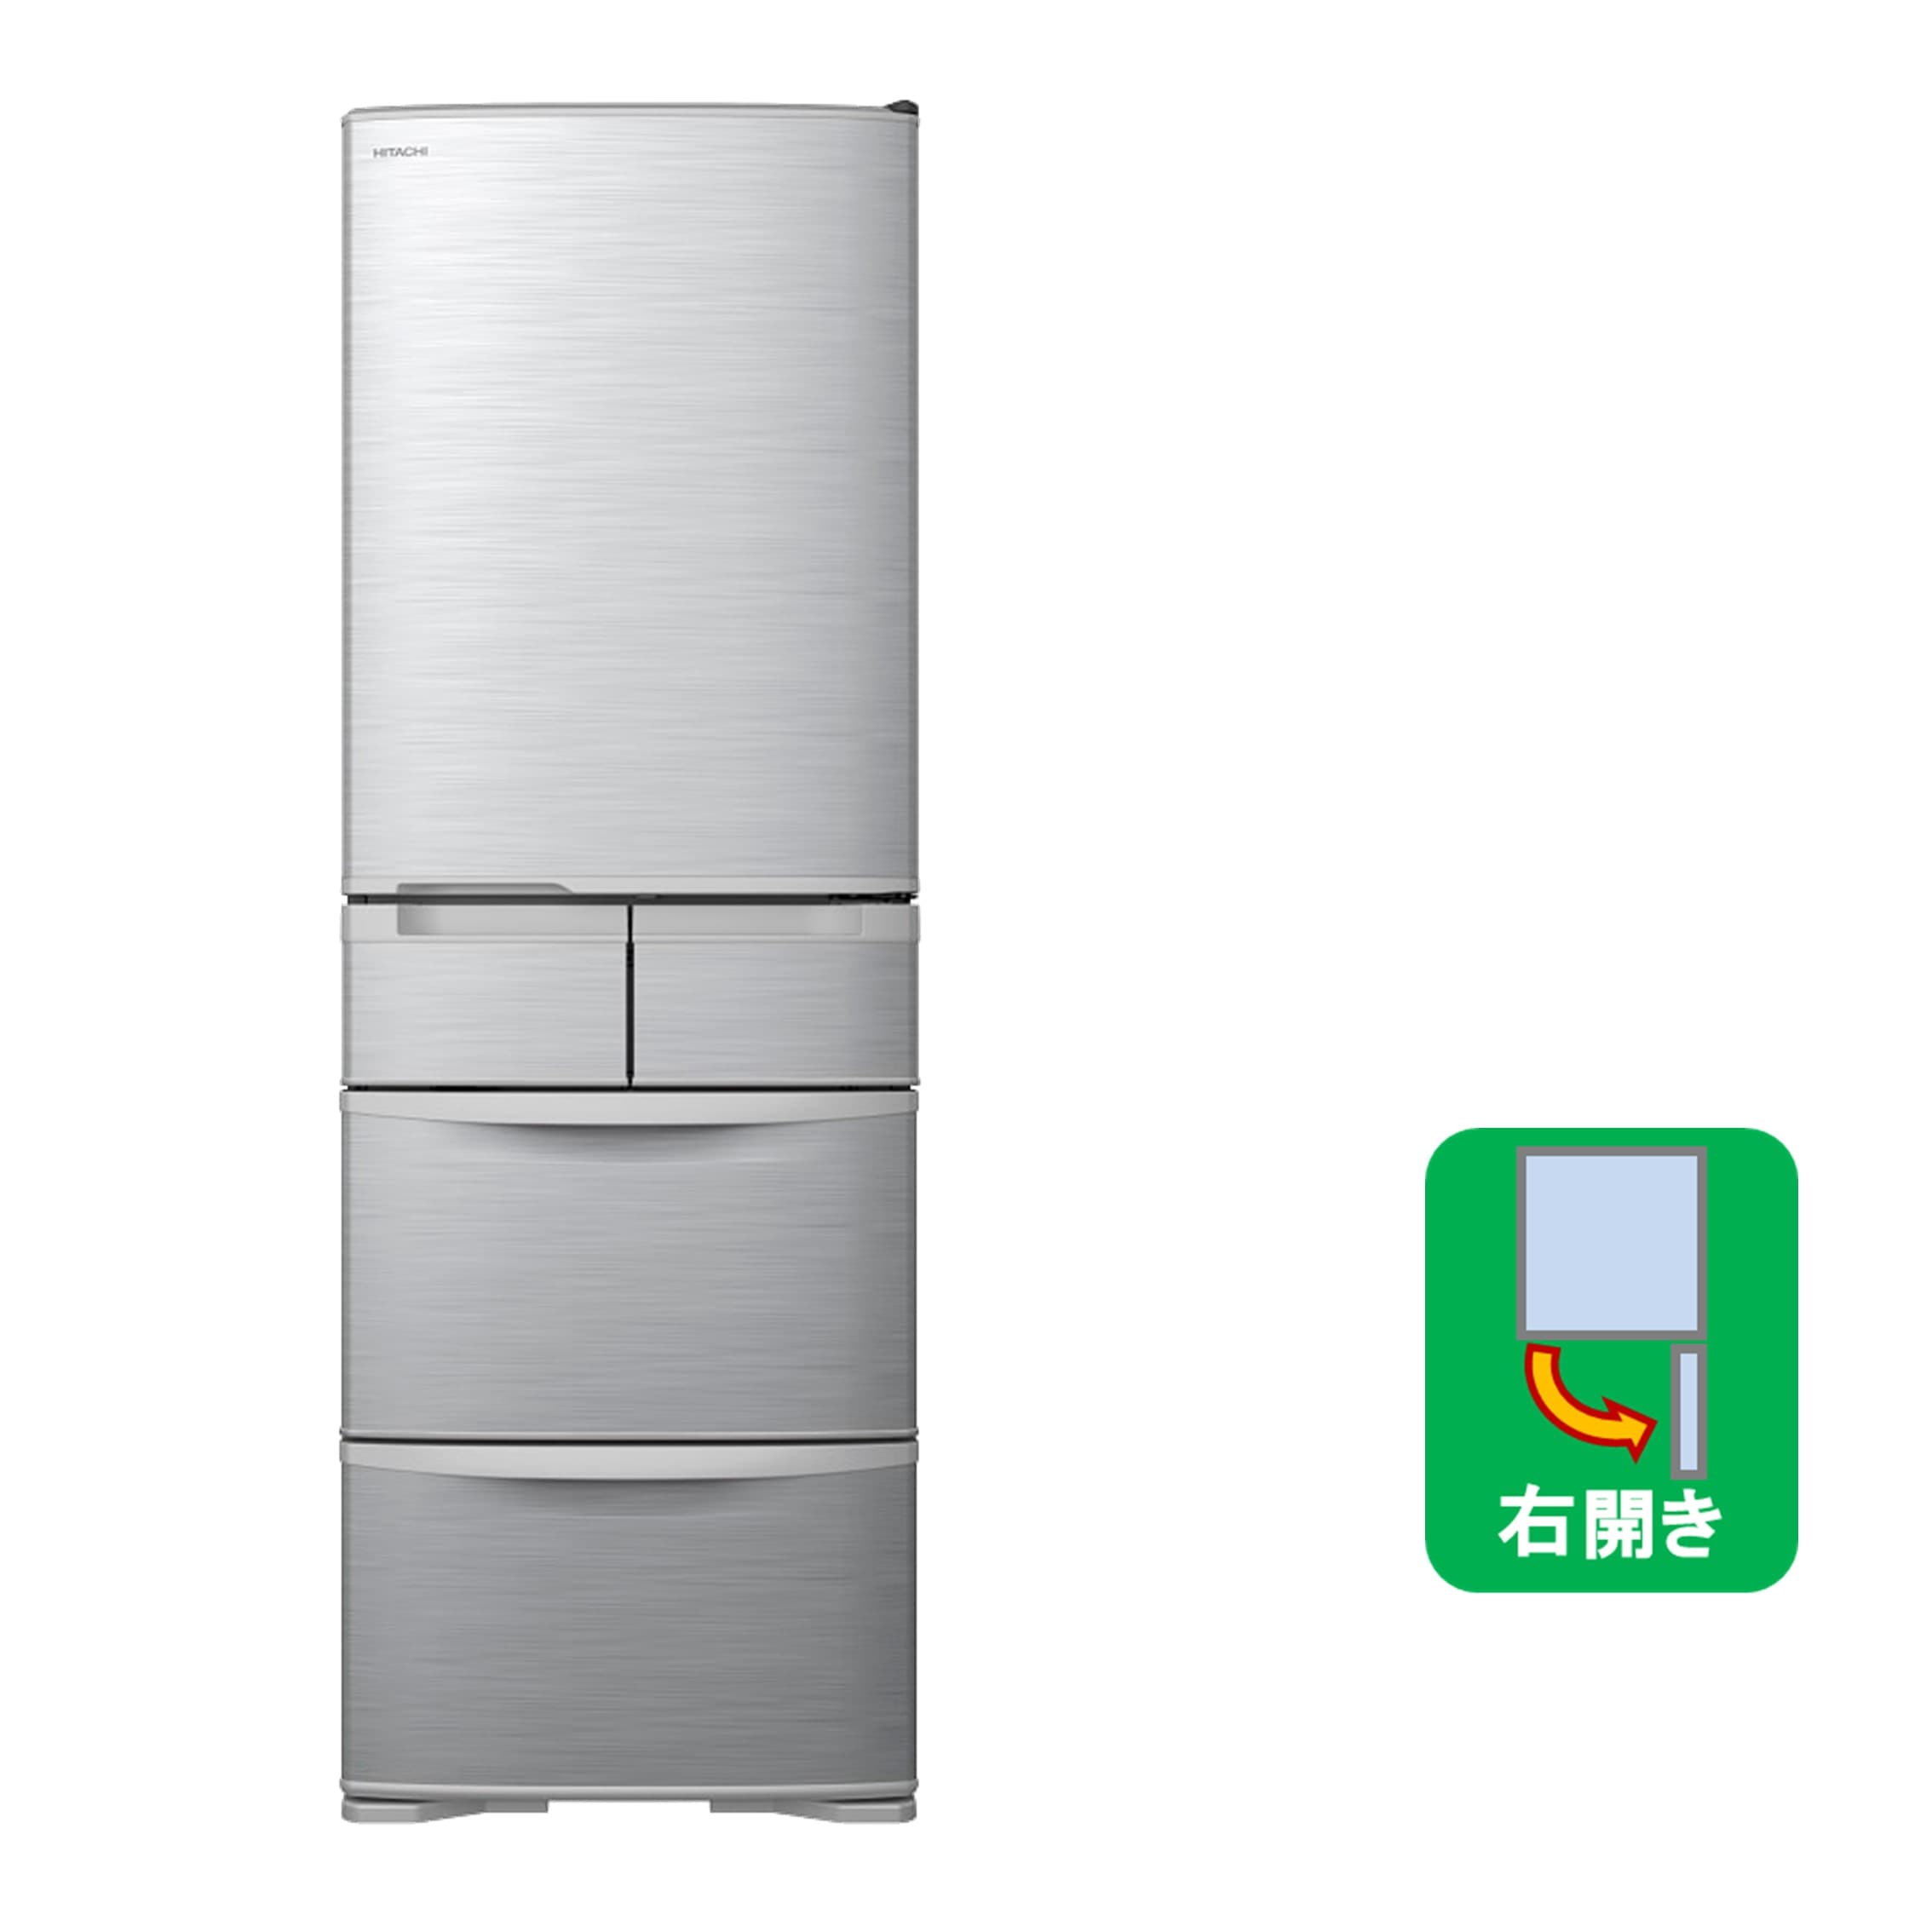 正規品・日本製 冷蔵庫 日立 2019年 230L R-23JA メタリックシルバー 